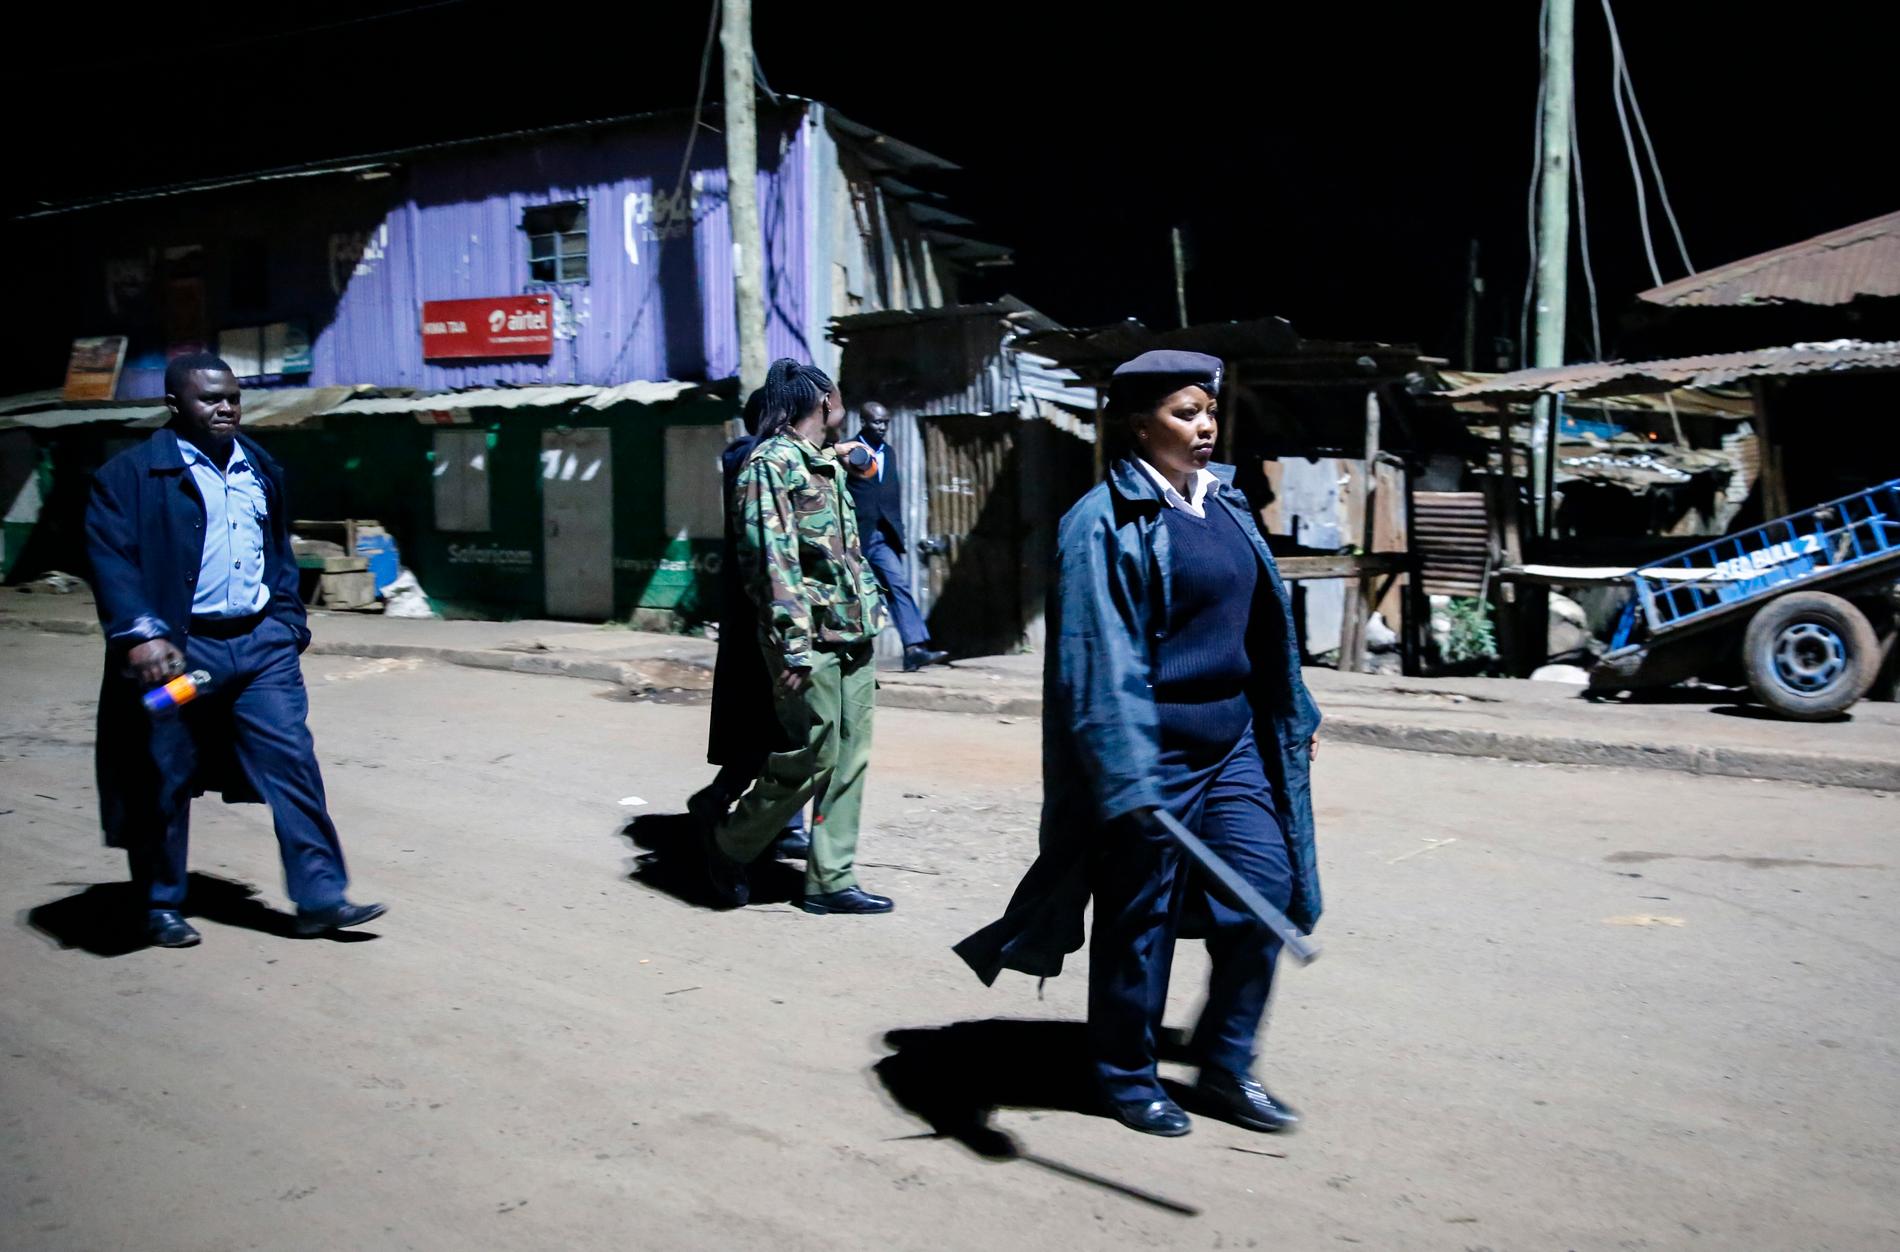 NAIROBI, KENYA Polis utrustad med tårgas och batonger patrullerar ett slumområde under söndagen. Myndigheterna har infört ett utegångsförbud mellan sju på kvällen och fem på morgonen för att begränsa smittspridningen i landet.